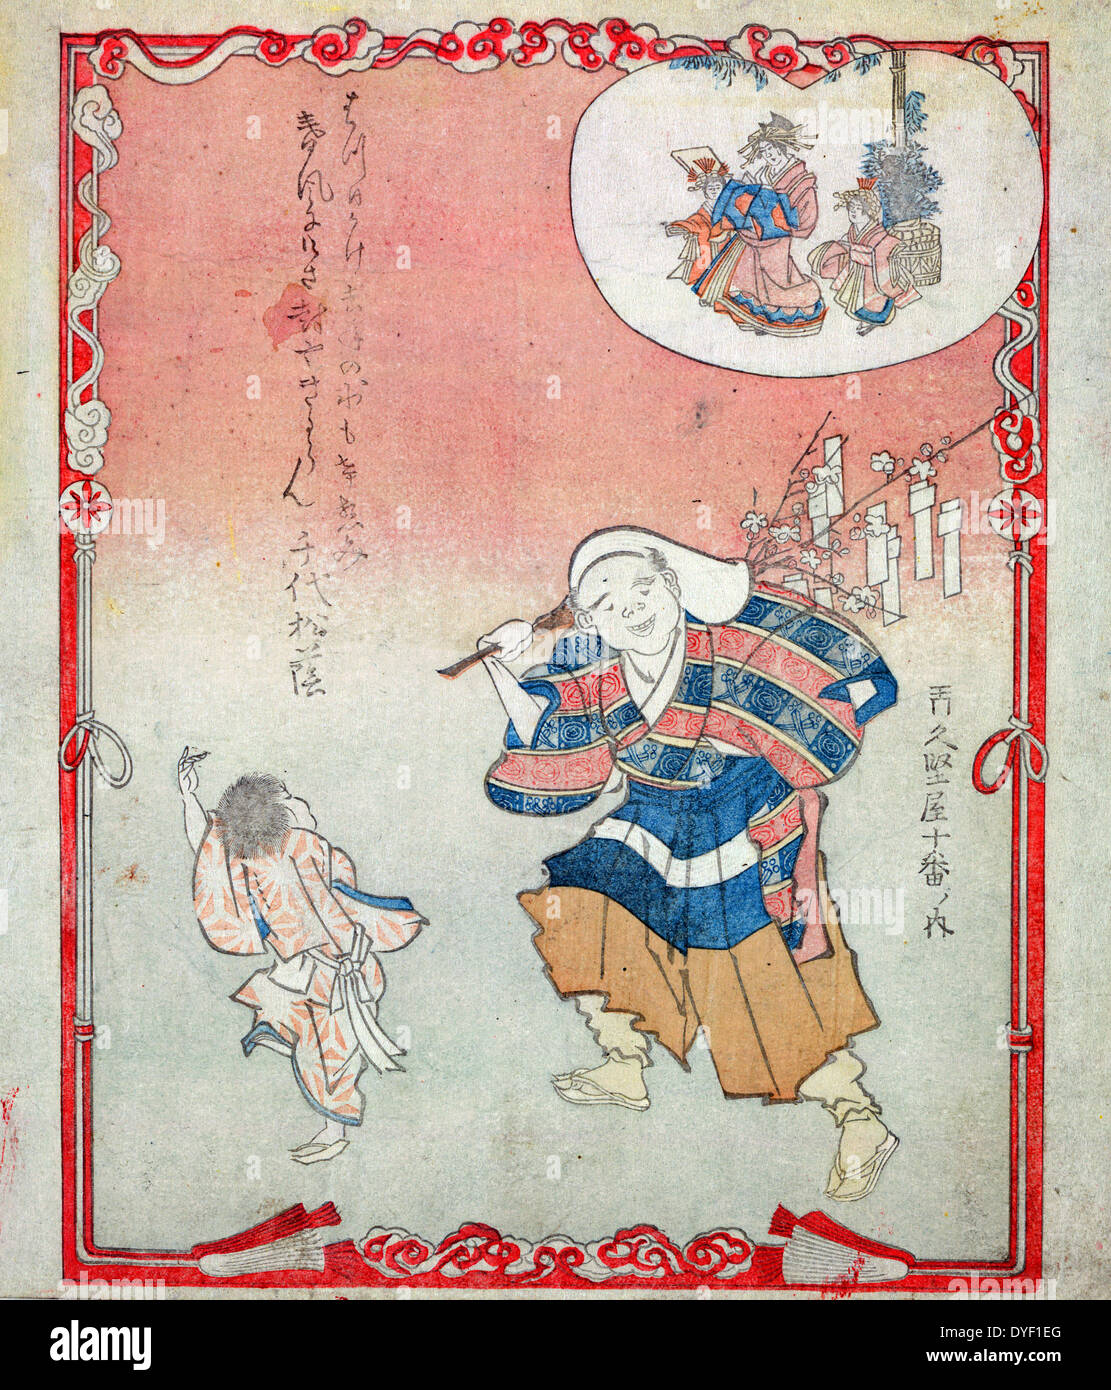 Kesaubumi Uri (Vendeur de charmes). Publié entre 1801 et 1830. Imprimer montre un homme portant des charmes suspendu à une branche d'arbre sur son épaule, un enfant semble danser devant lui, et décrits en une forme coeur 'valentine' dans le coin supérieur droit sont une femme et deux enfants. Banque D'Images